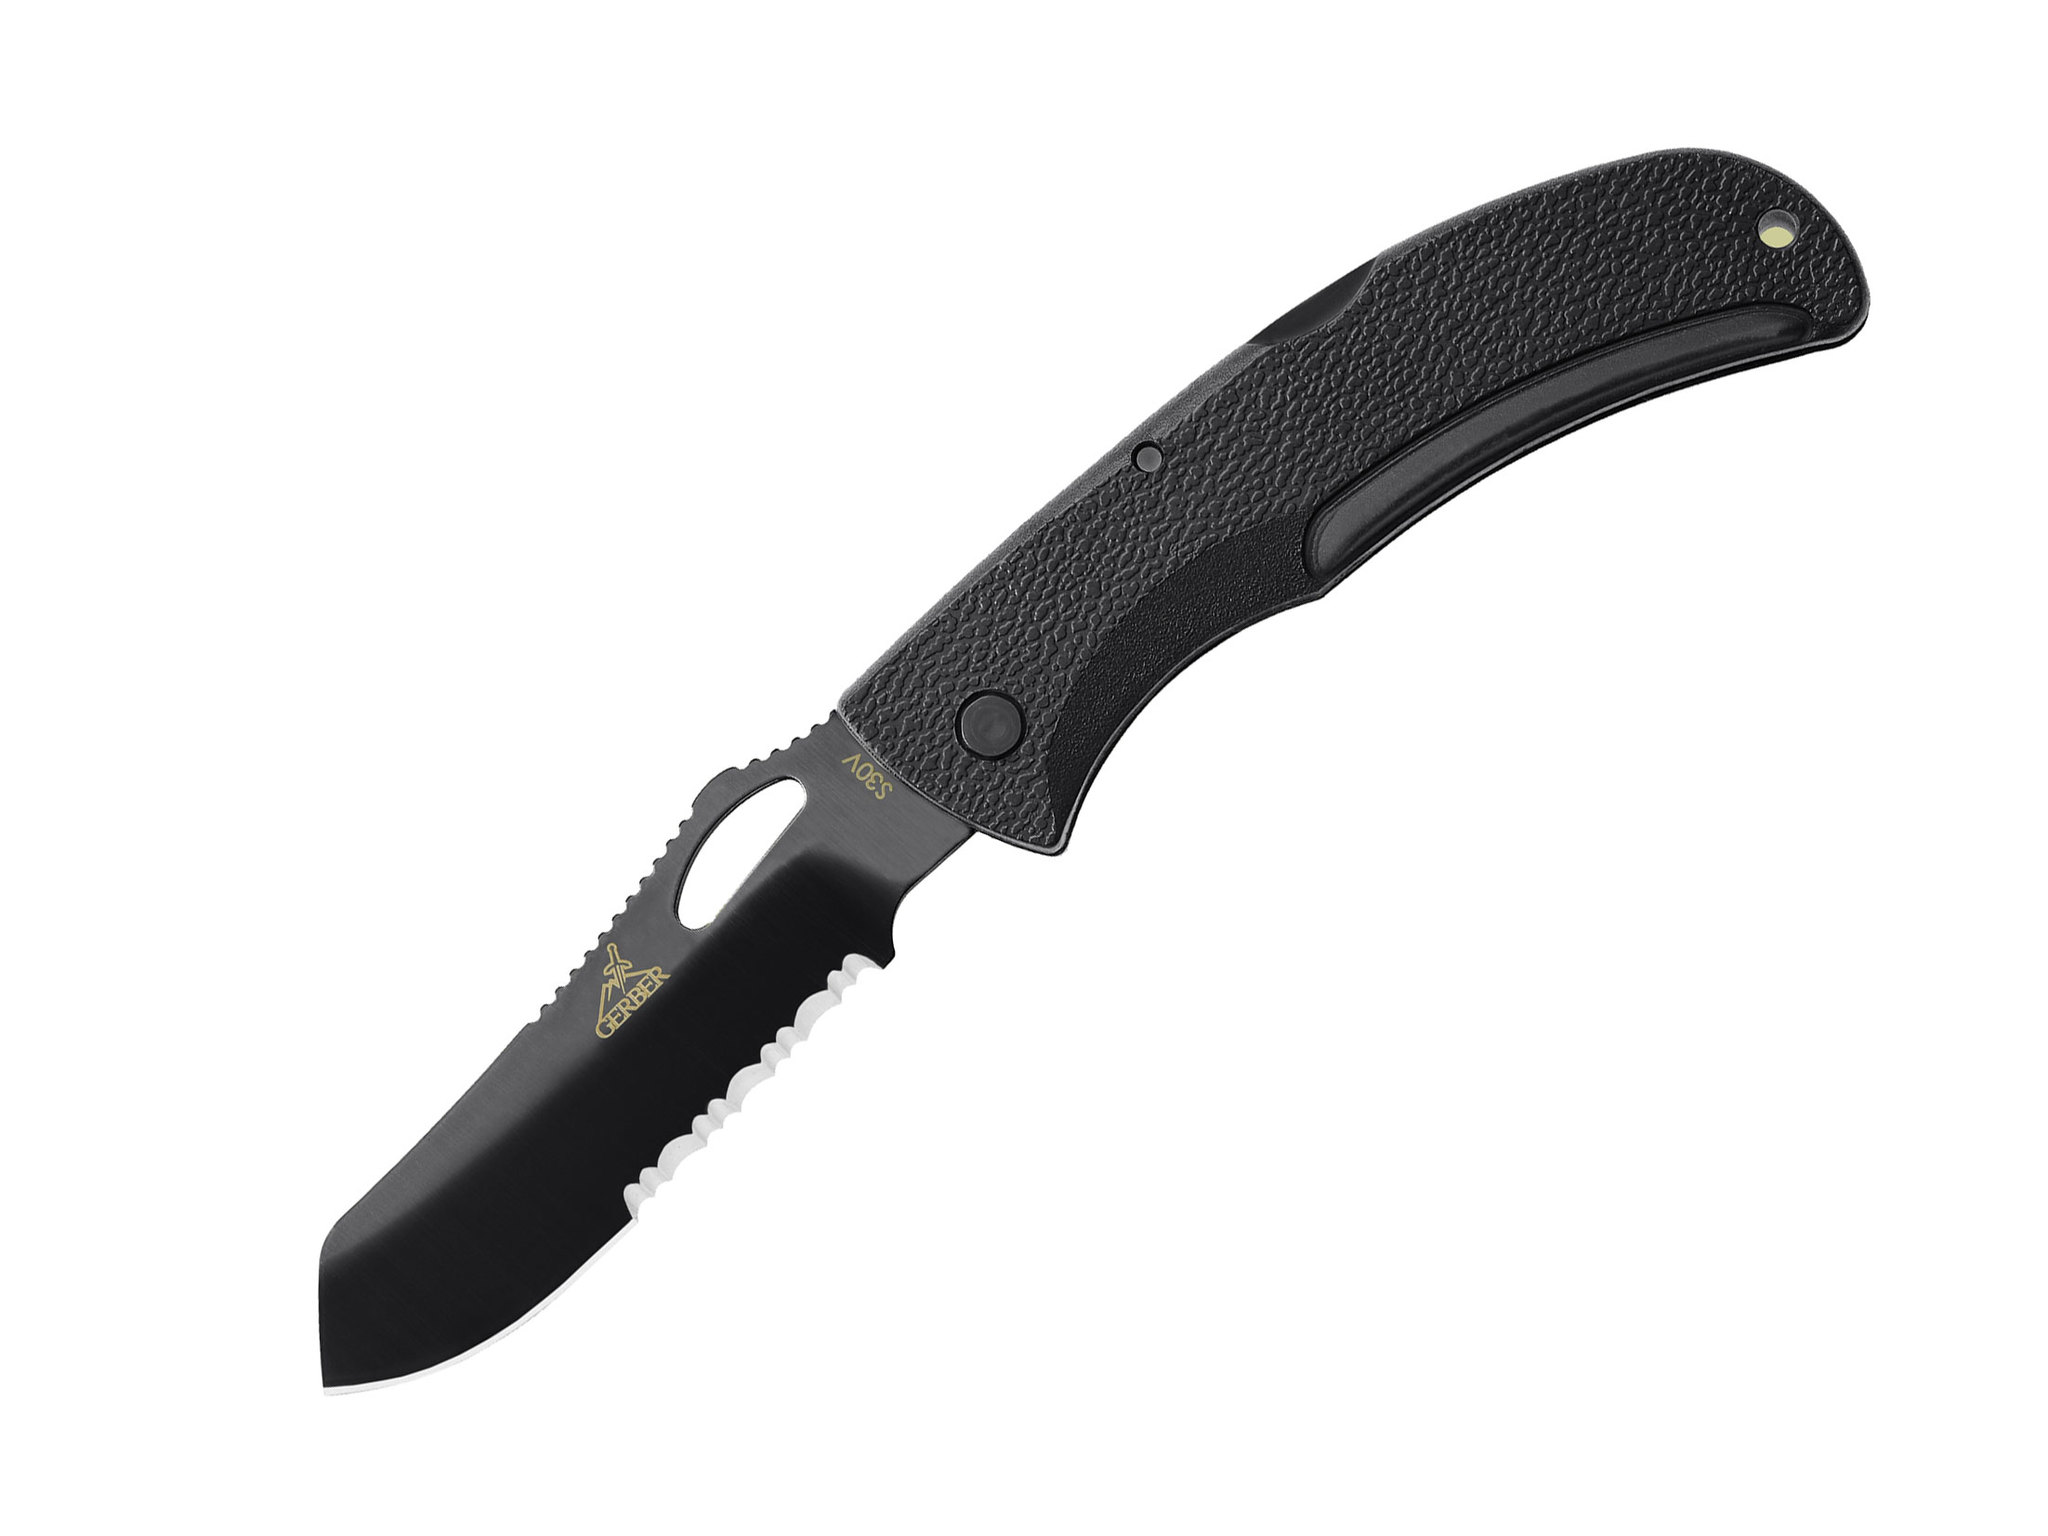 Складной нож Gerber E-Z Out Black, сталь CPM-S30V, рукоять термопластик GRN нож с фиксированным клинком gerber cfb combat сталь 154cm прорезиненная рукоять